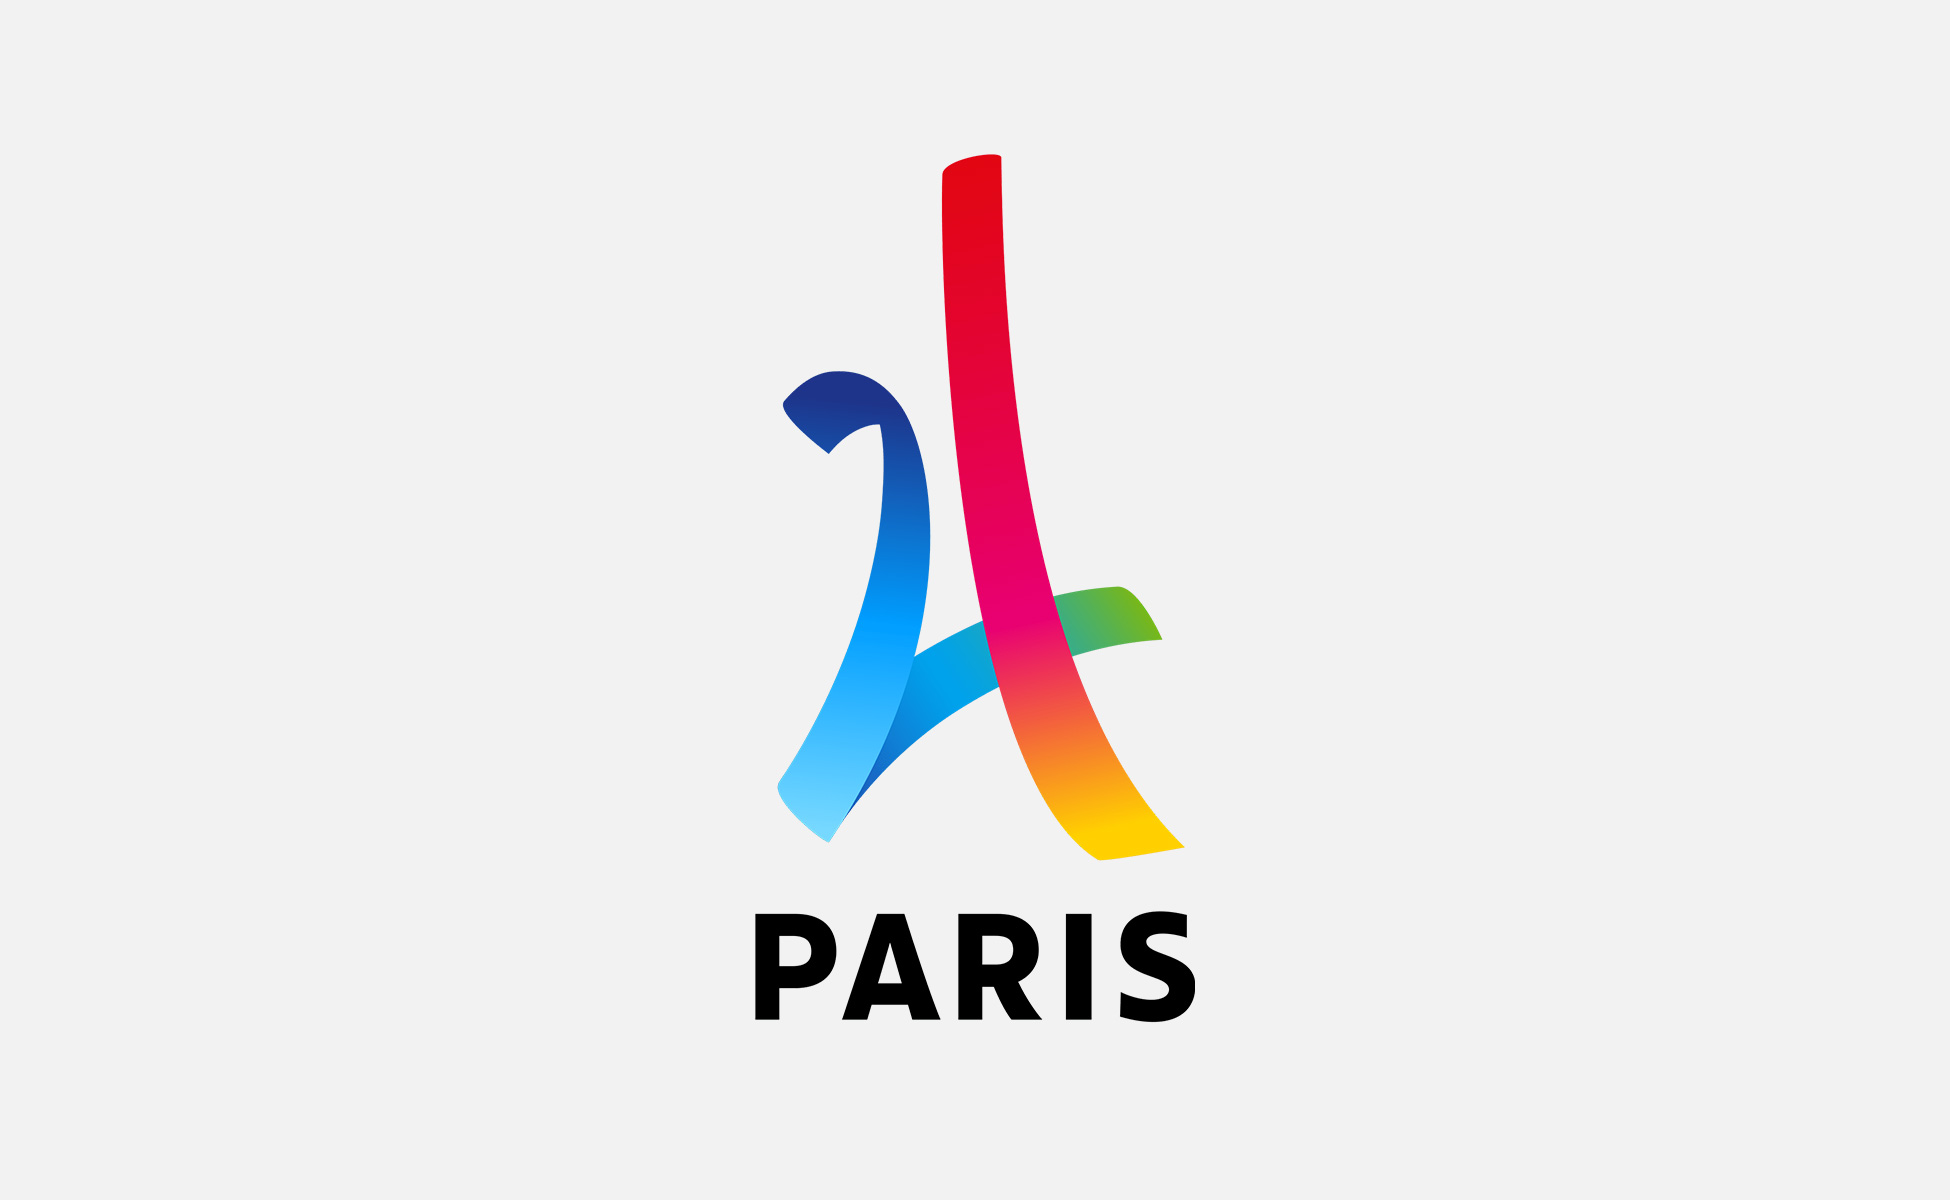 Pari réussi pour le logo des JO de Paris 2024 - Graphéine